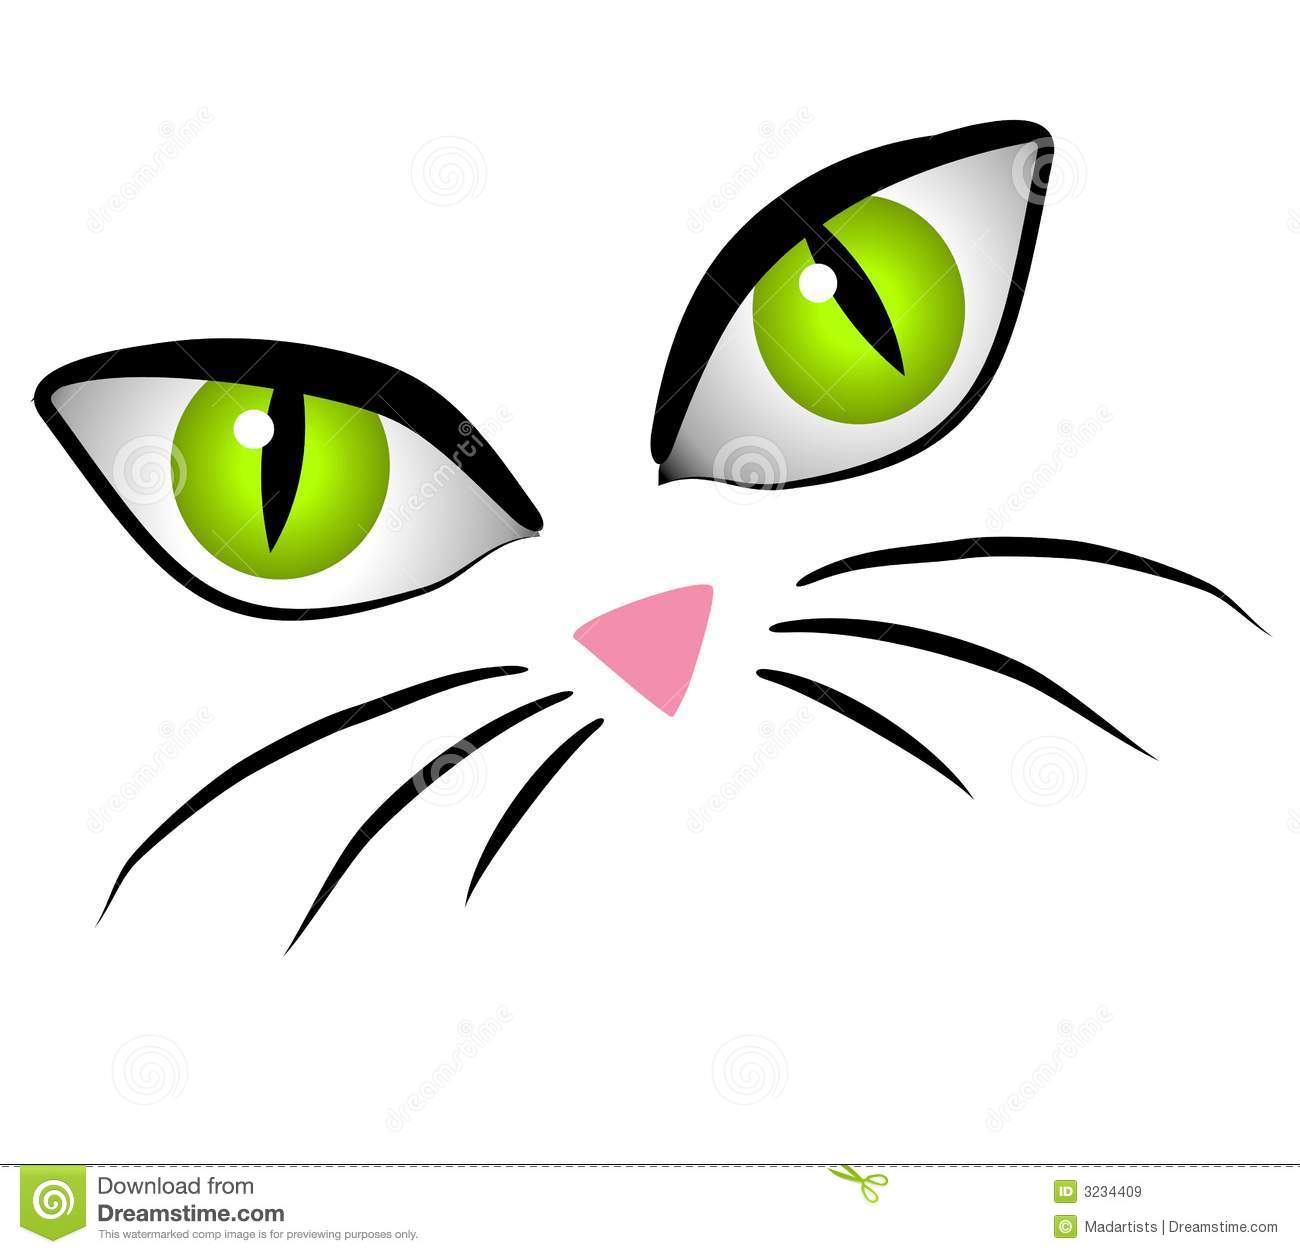 Clip Art Cartoon Illustration Of The Facial Features Of A Cat   Big